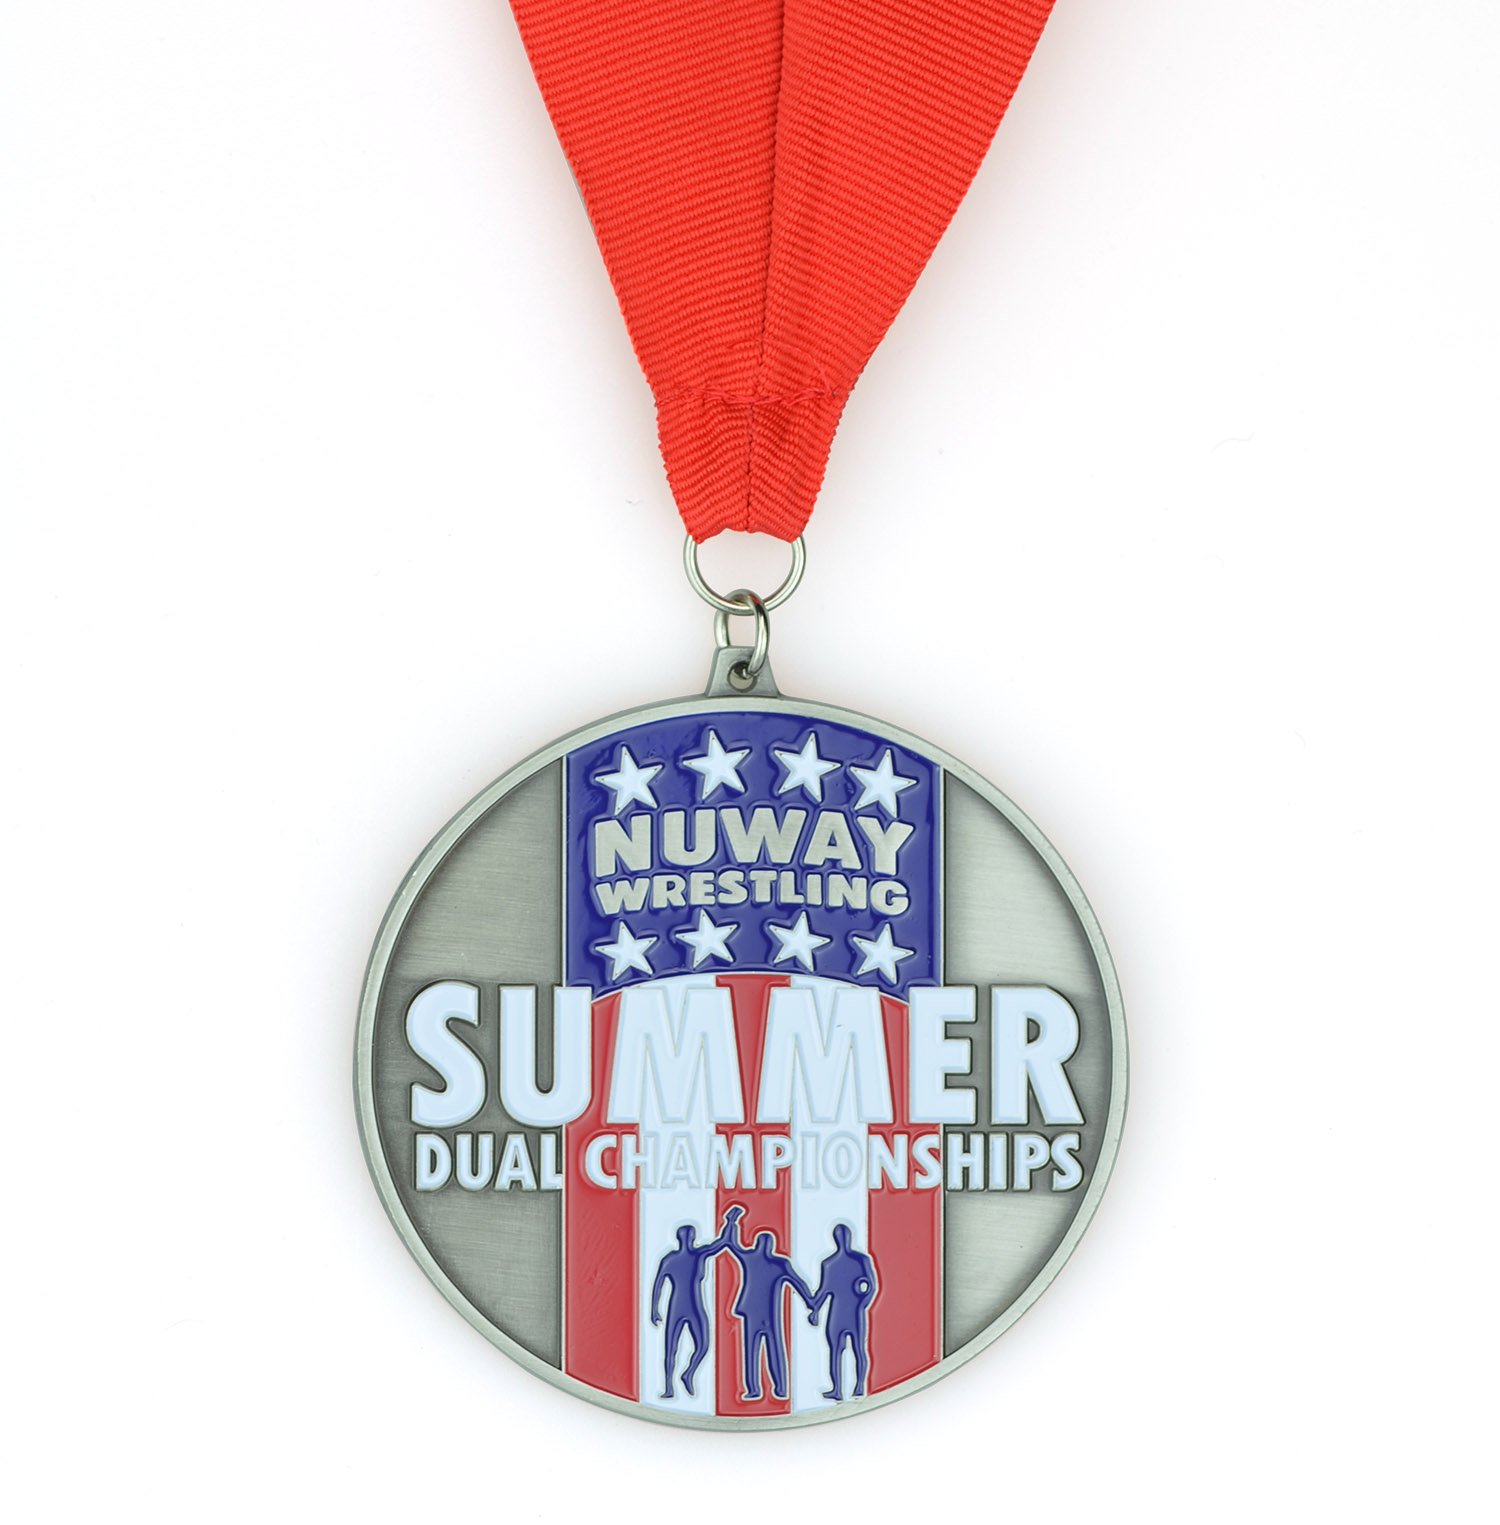 Lembrança de alta qualidade em liga de zinco logotipo personalizado metal verão campeonatos duplos luta judô taekwondo karatê maratona corrida medalha esportiva (3)